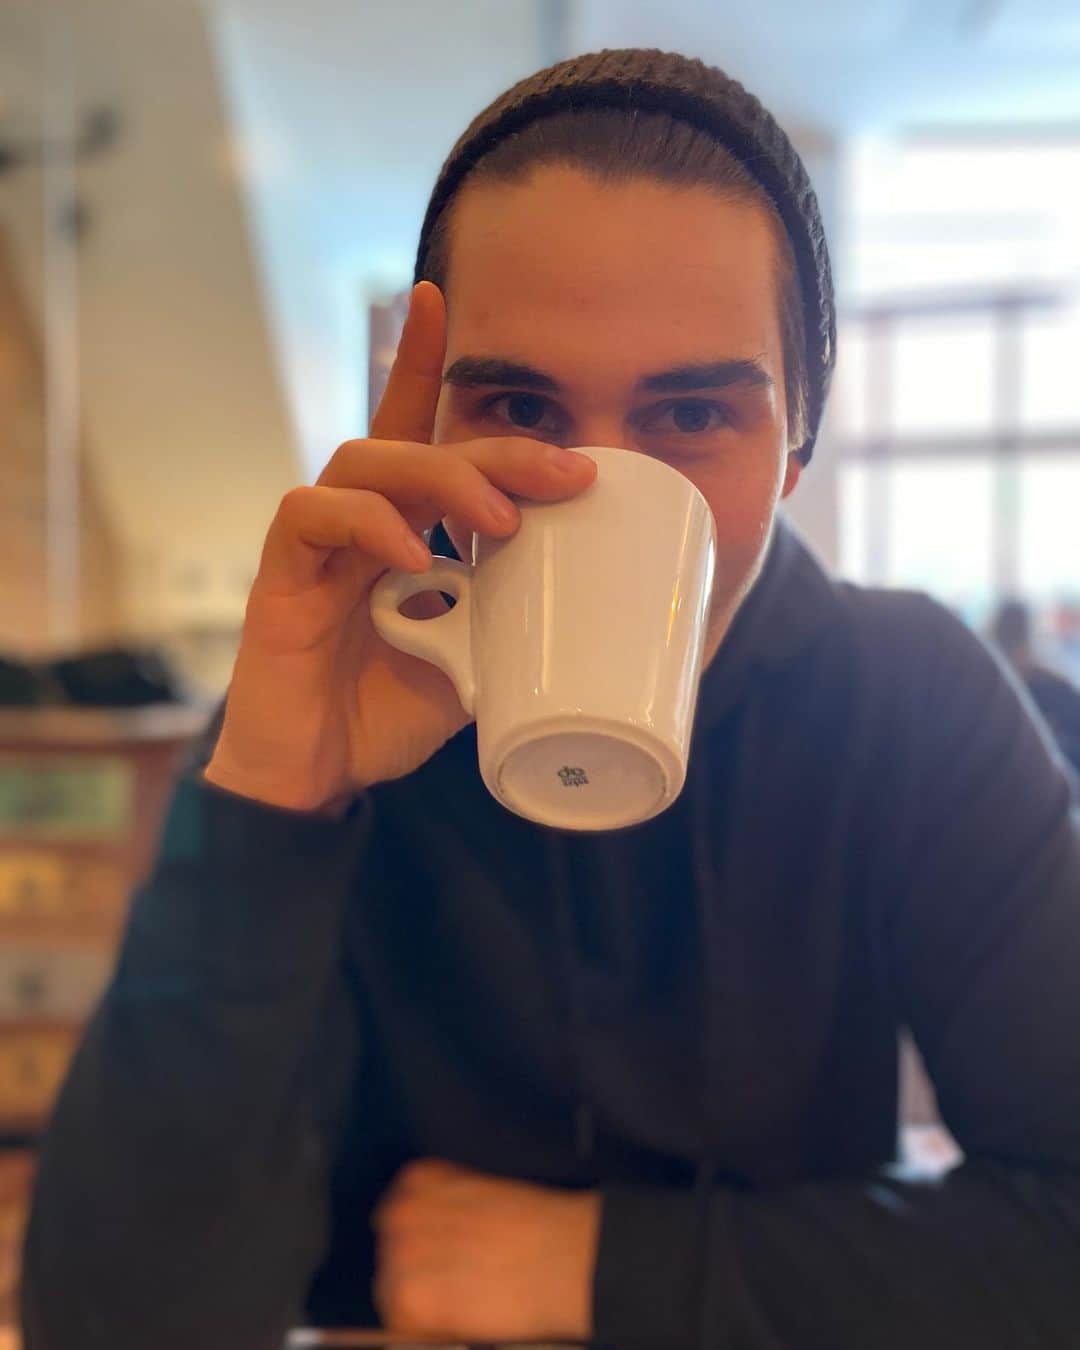 ザカリー・ダナヒューのインスタグラム：「Nothing like starting my day with a fresh cup of coffee, some meditation and prayer. Watching the sunrise with a hot cup o’ Jo, now that’s priceless ☀️♥️☕️」